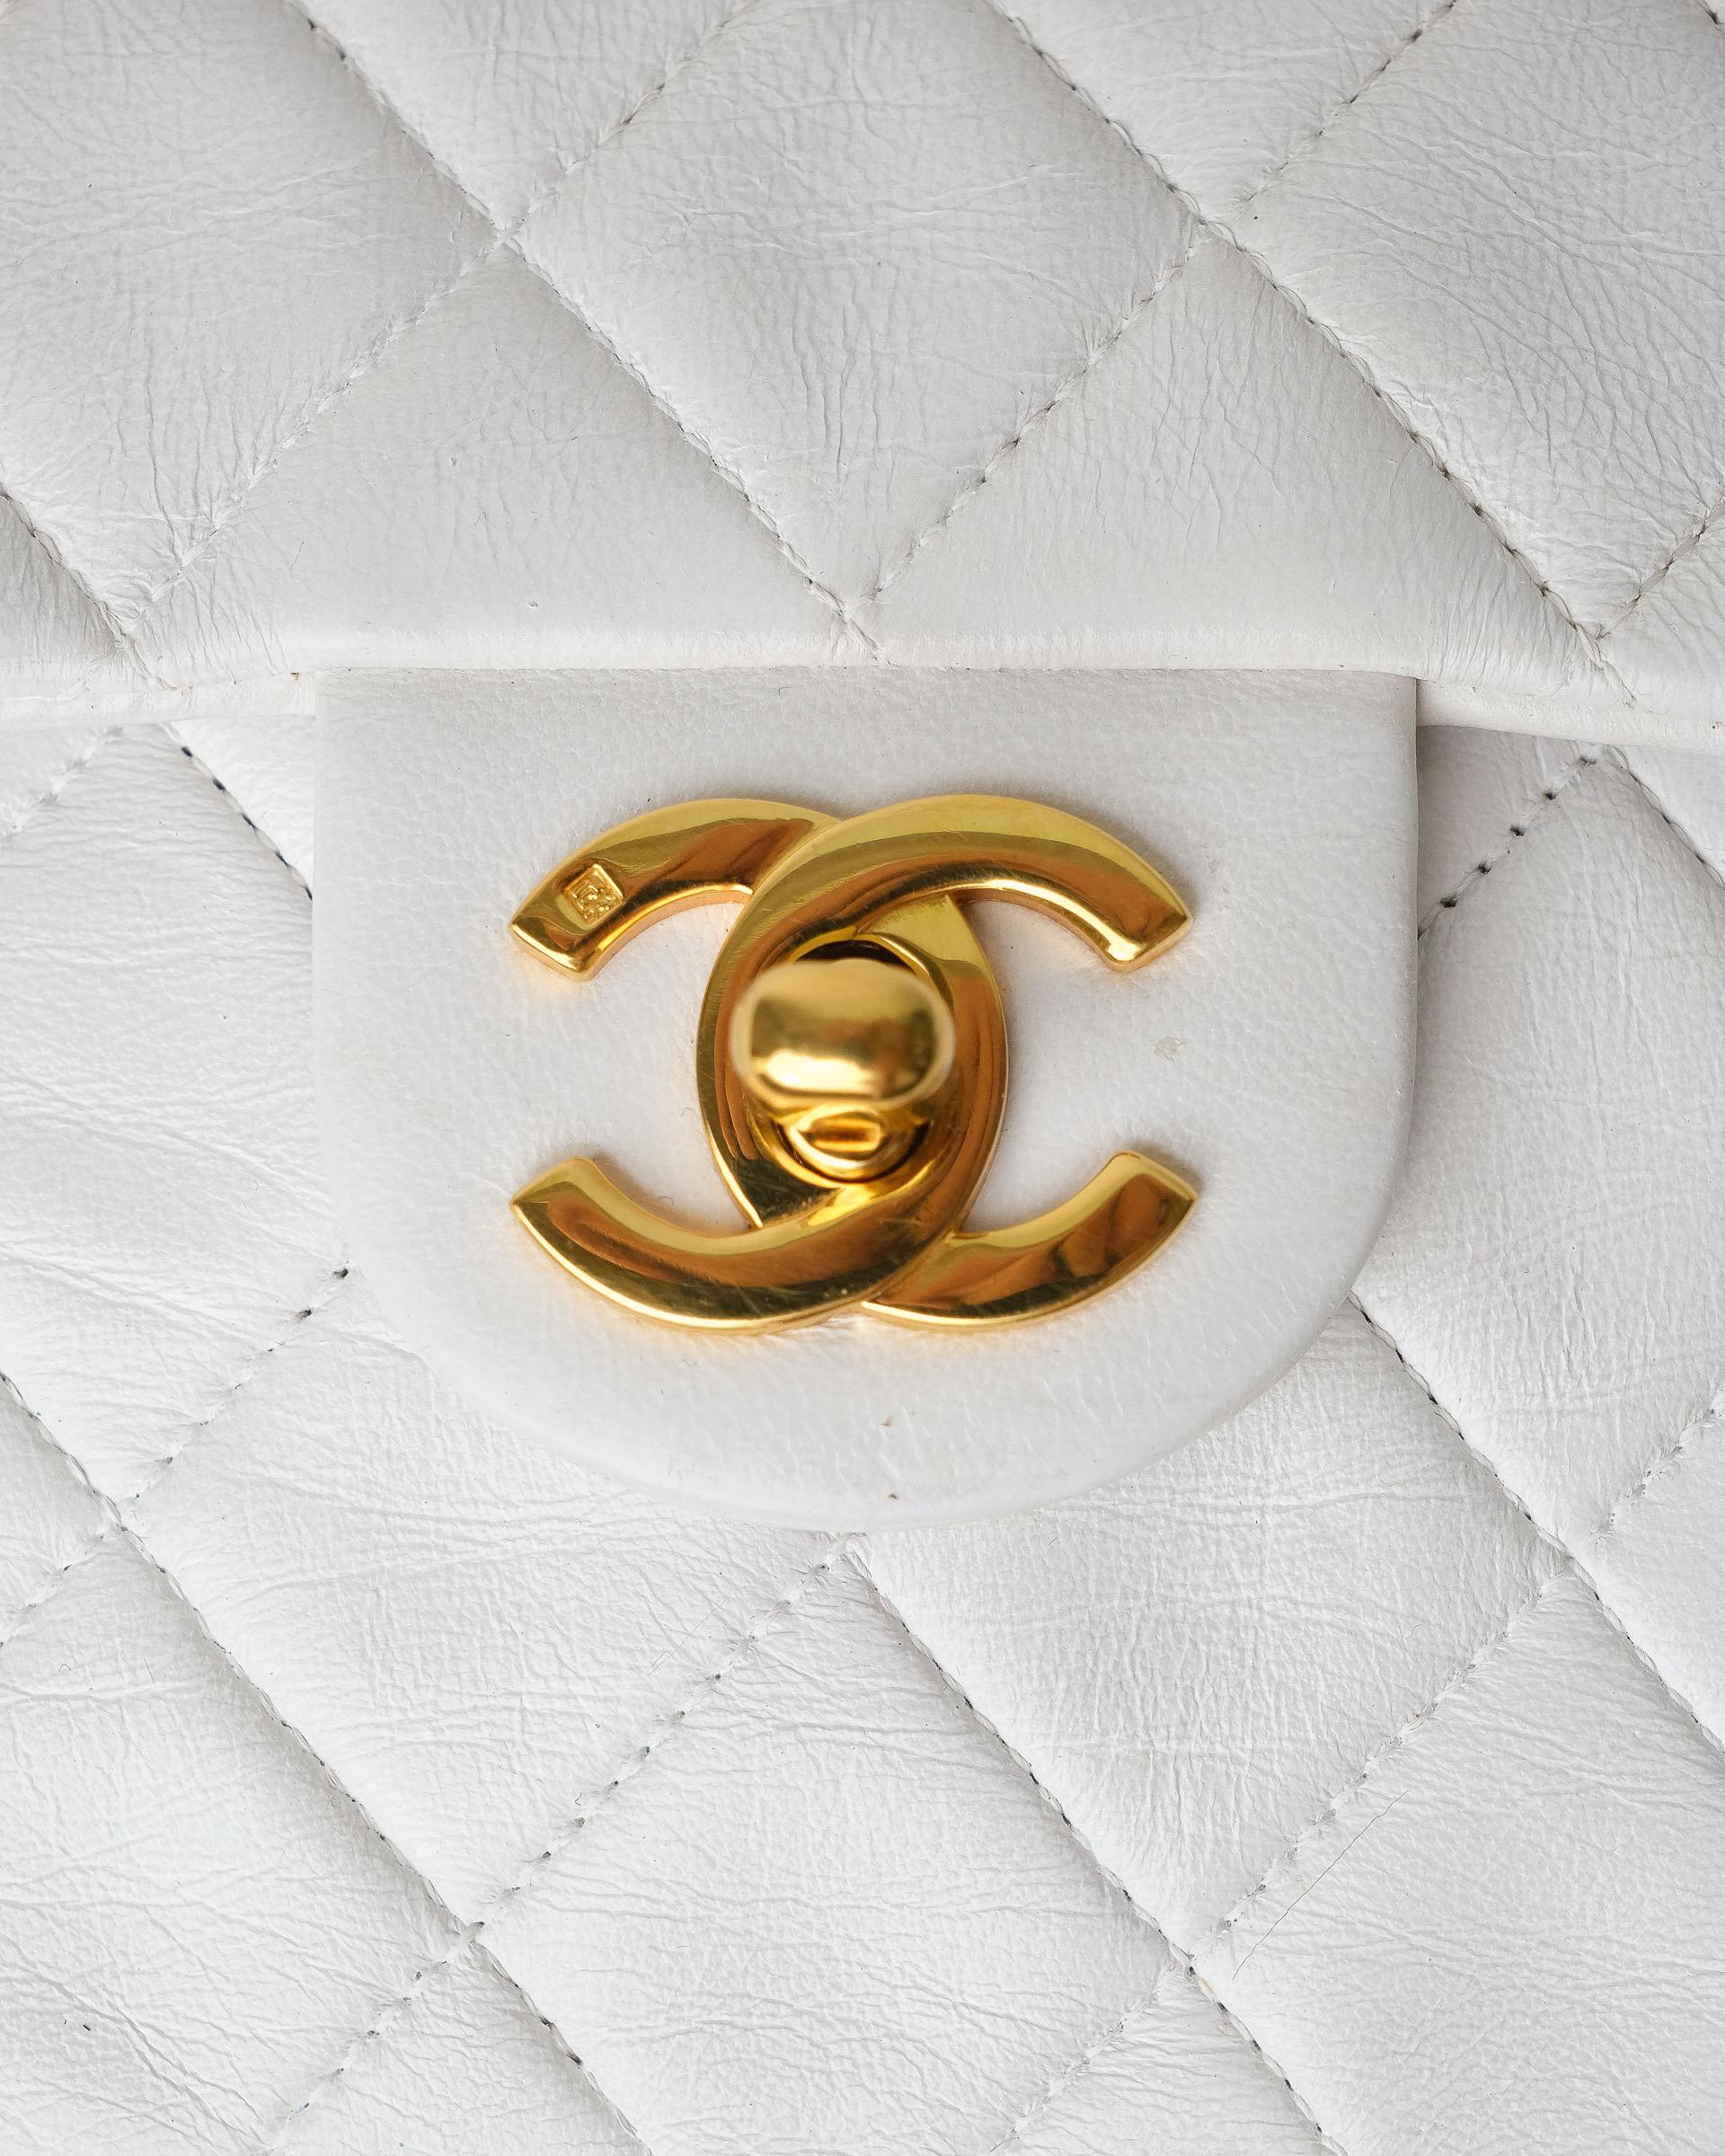 Borsa firmata Chanel, modello Timeless Mini Flap Vintage, realizzata in pelle liscia bianca con hardware dorati. Dotata di una patta con chiusura a girello logo CC, internamente rivestita in pelle liscia tono su tono, capiente per l’essenziale.